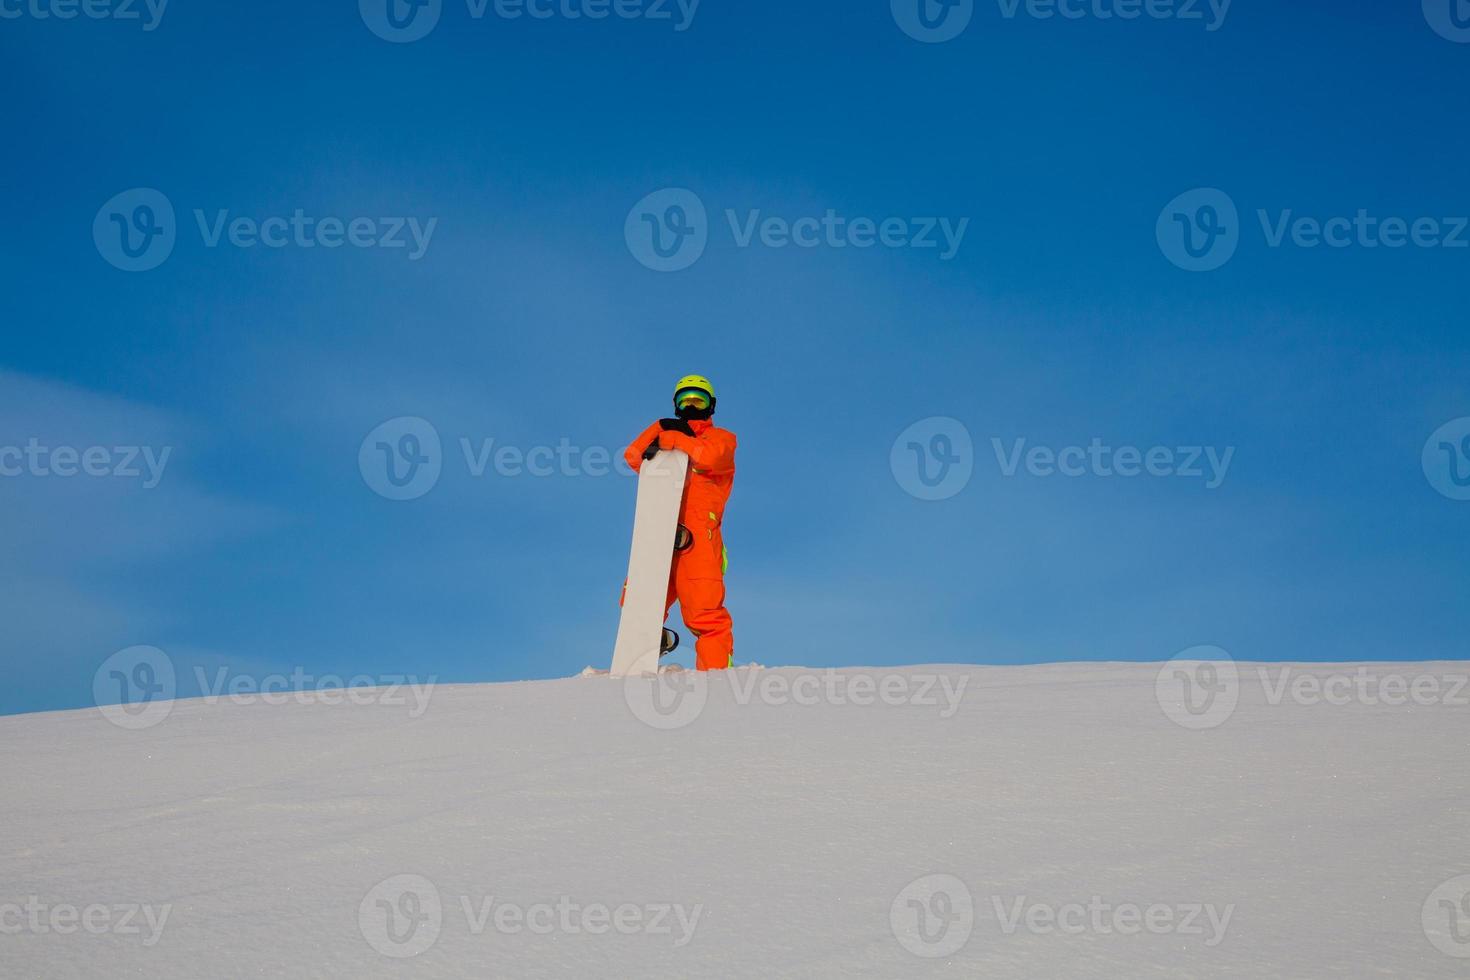 snowboarder freerider com snowboard branco em pé no topo da pista de esqui foto